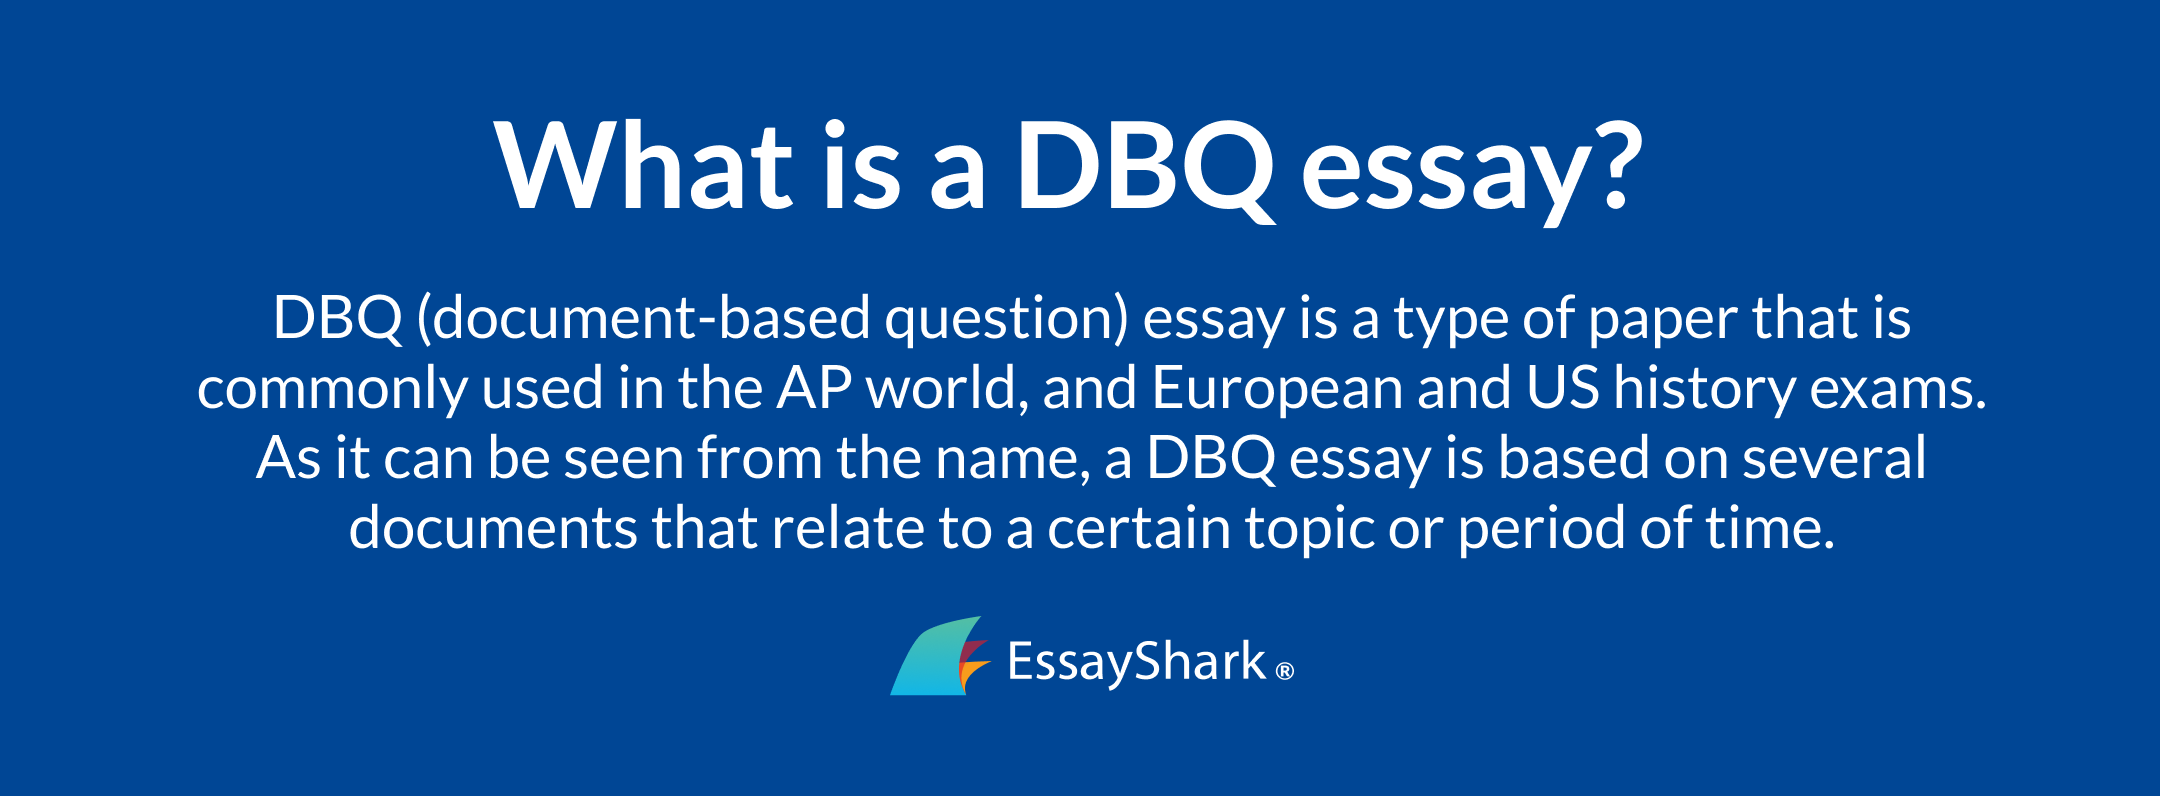 dbq essay definition